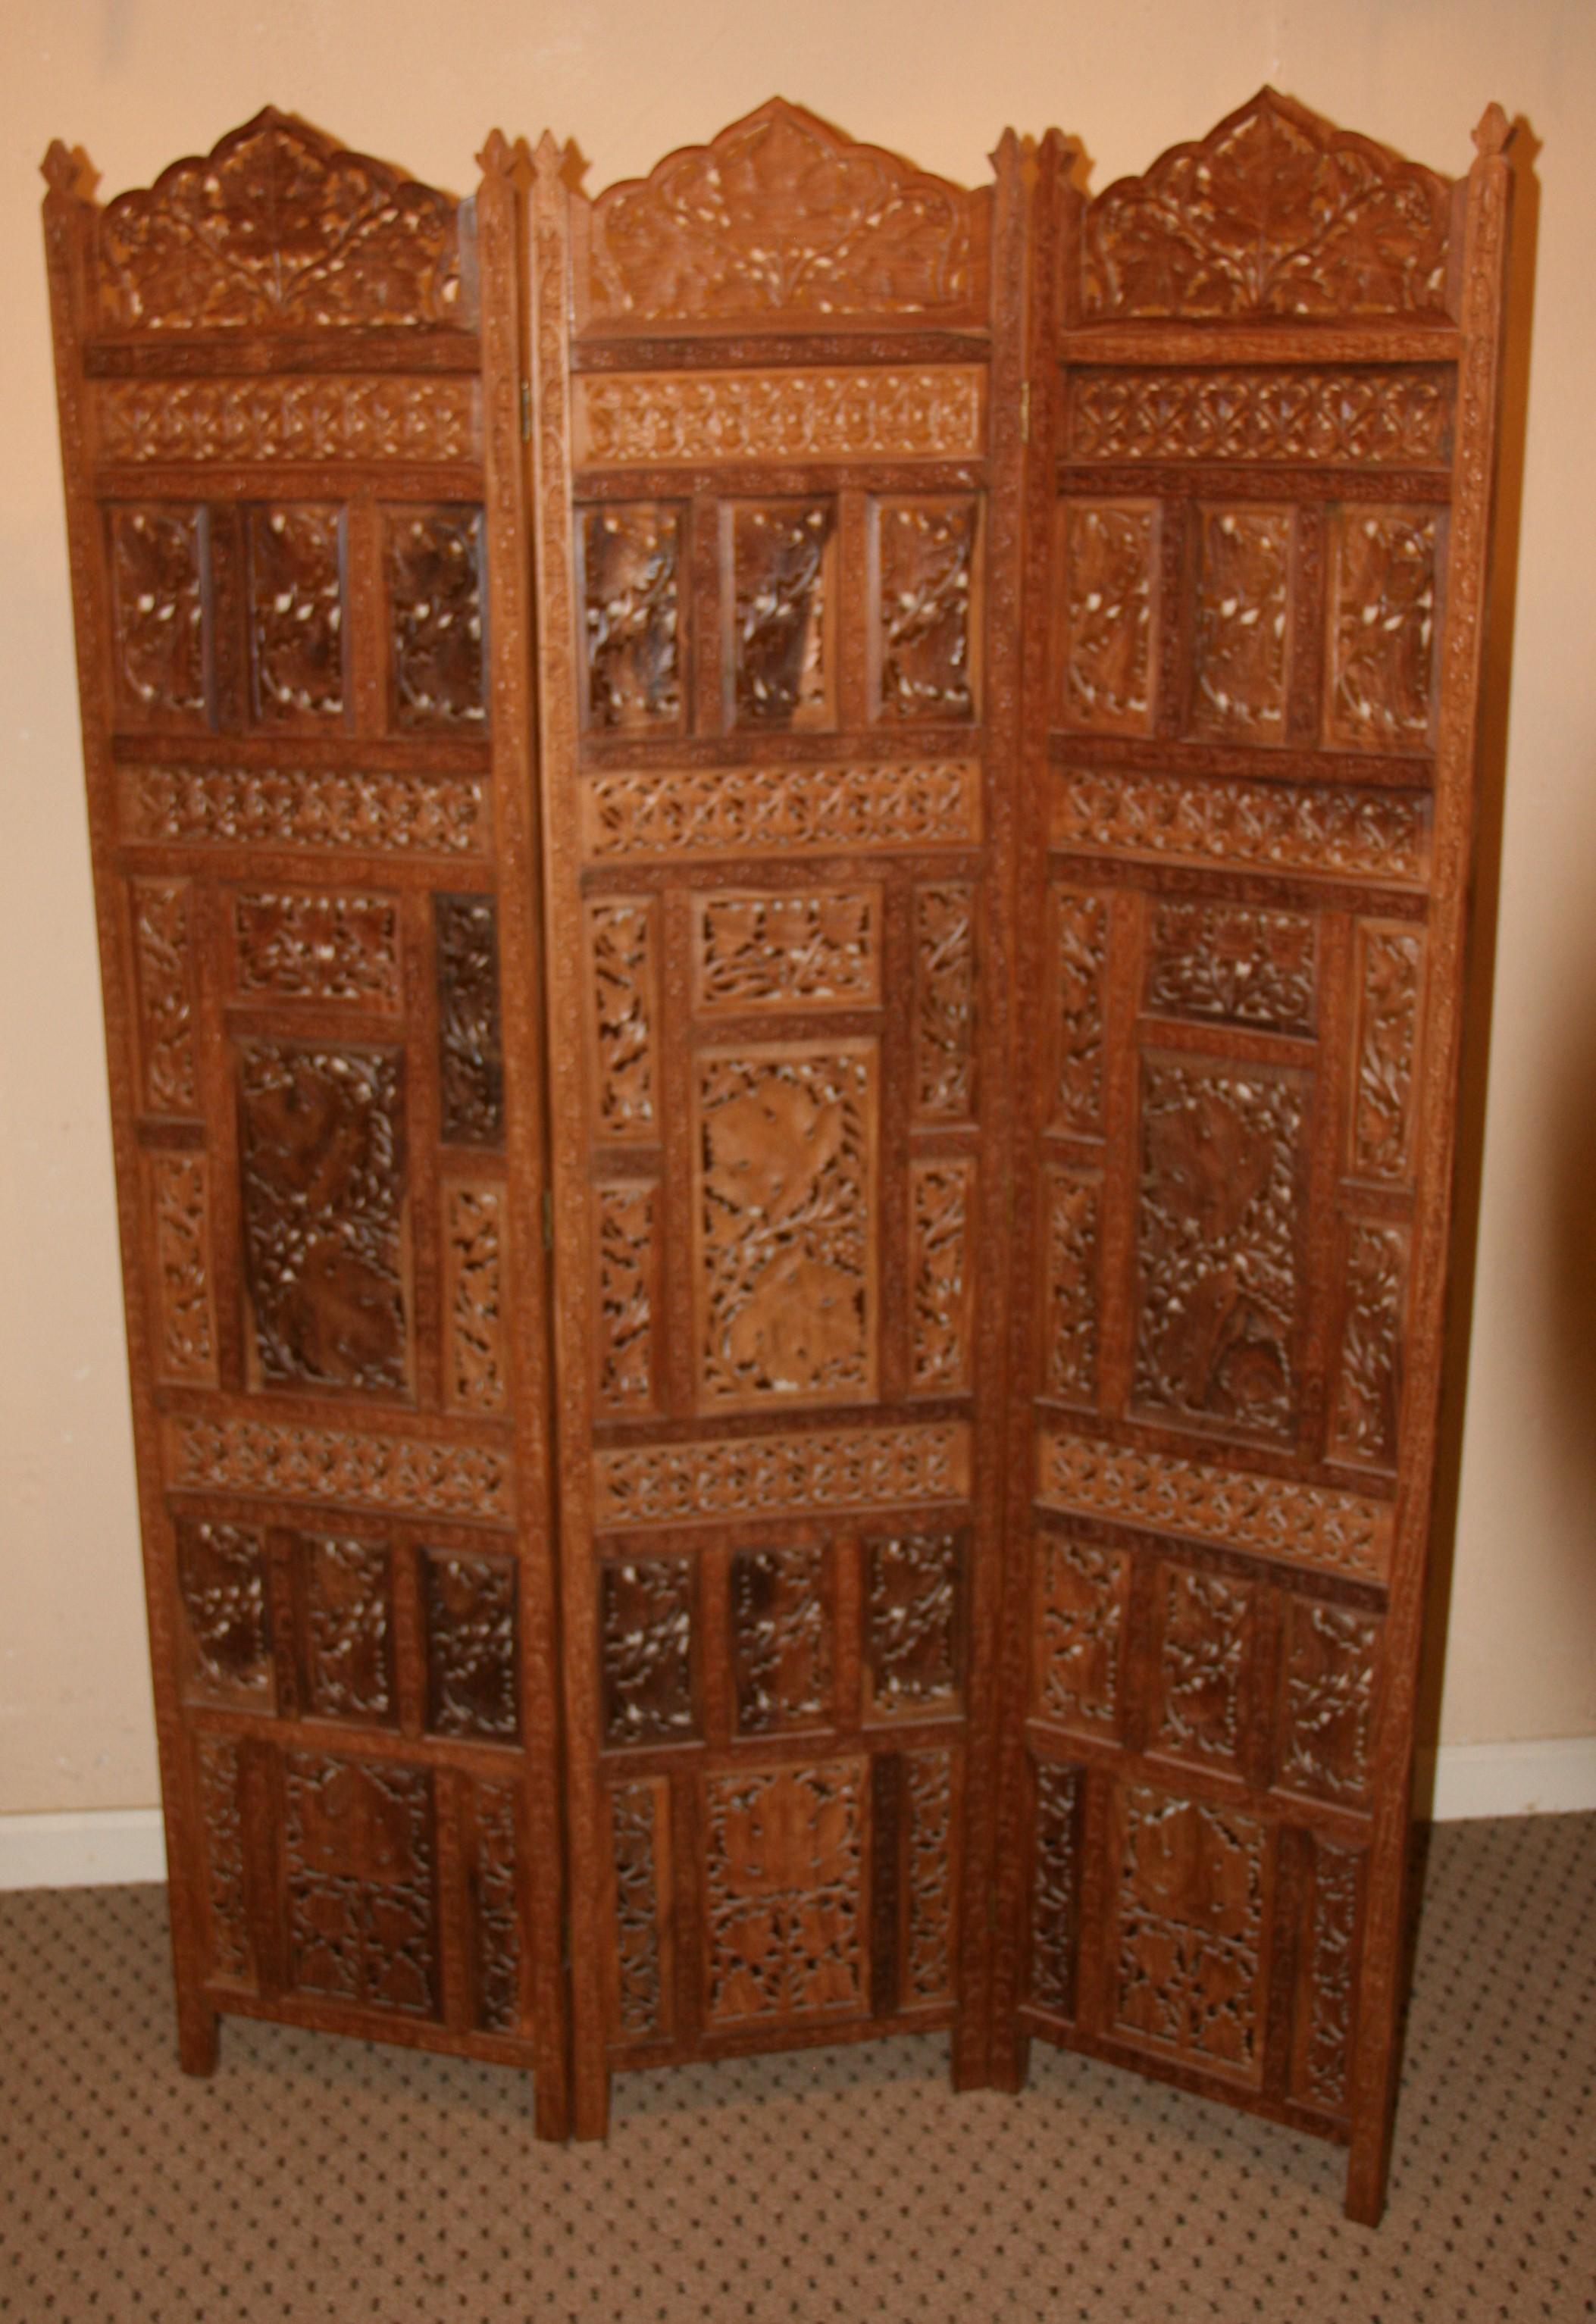 3-987 Detailed carved teak room divider screen.